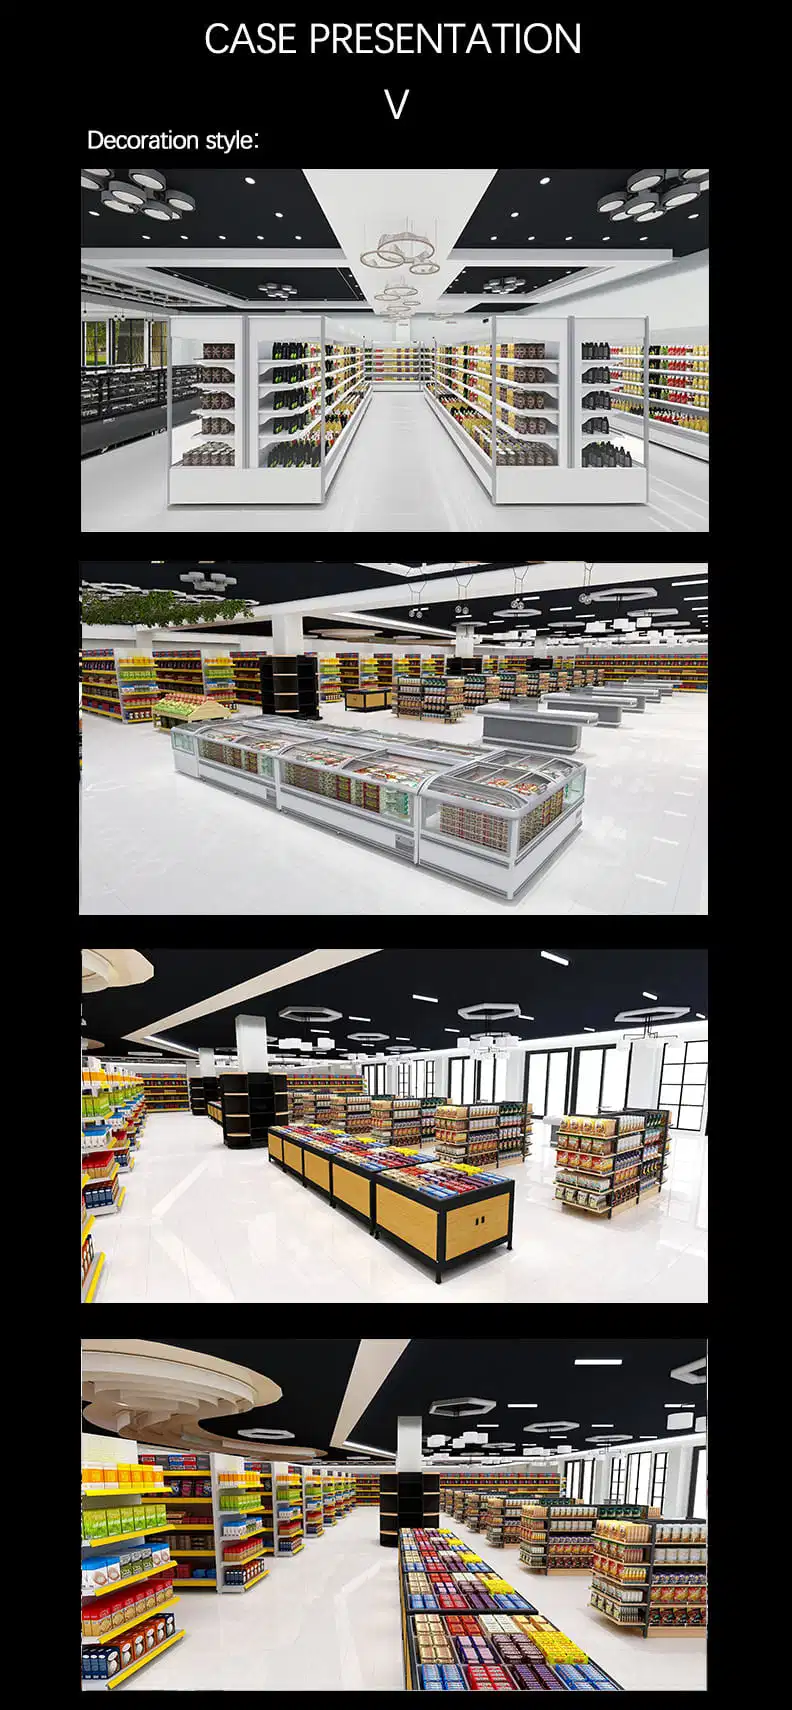 Ustom Supermarket Shop Design Service 3D Rendering Shop Design Refrigerator